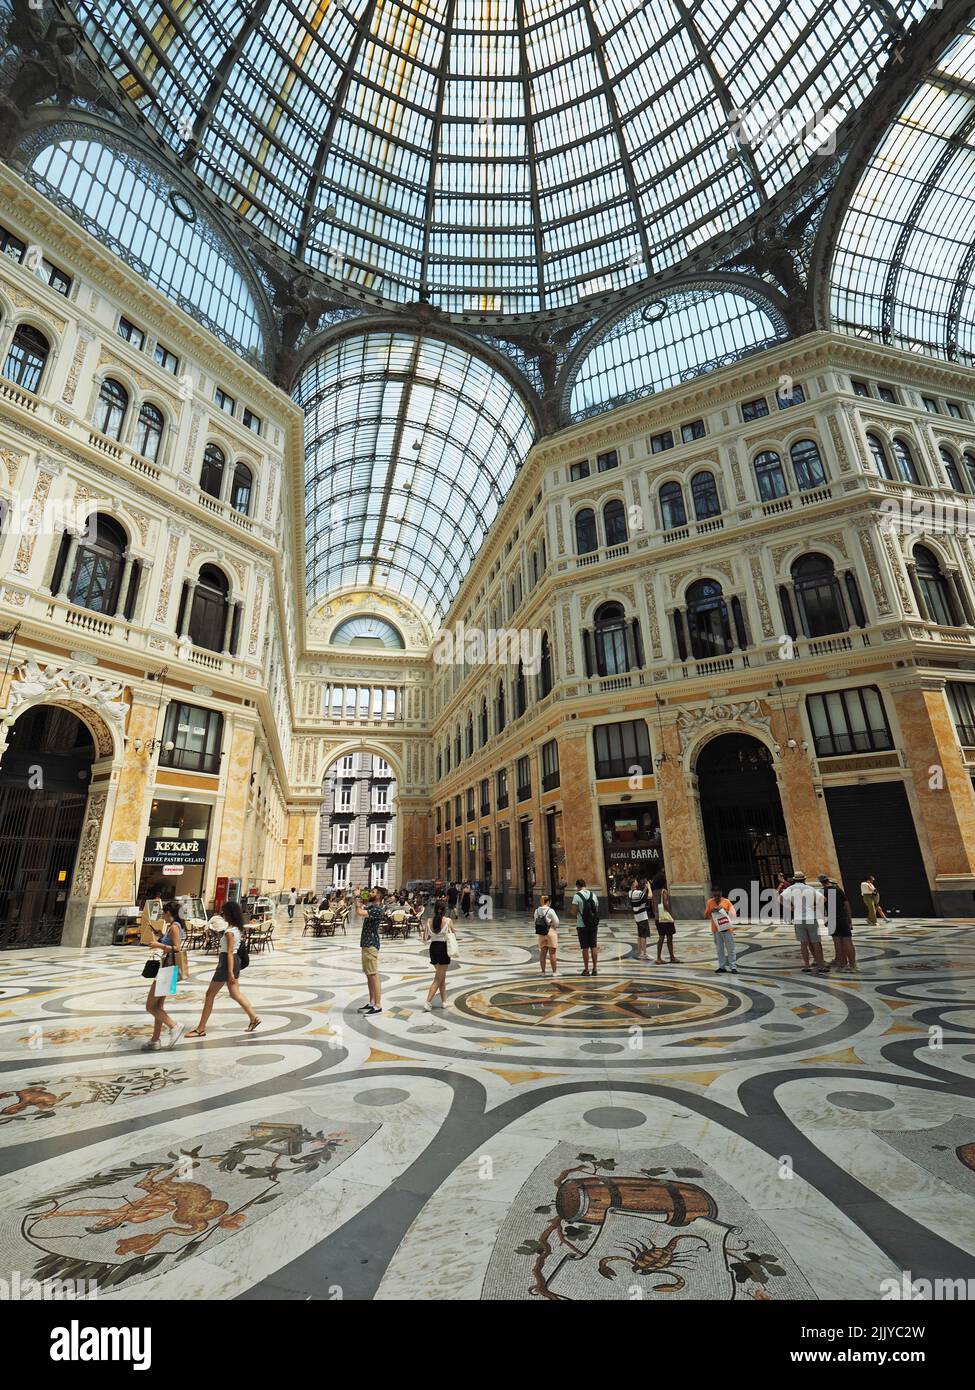 Les gens magasinent dans le grand centre commercial Galleria Umberto 1 dans le centre-ville de Naples, Campanie, Italie Banque D'Images